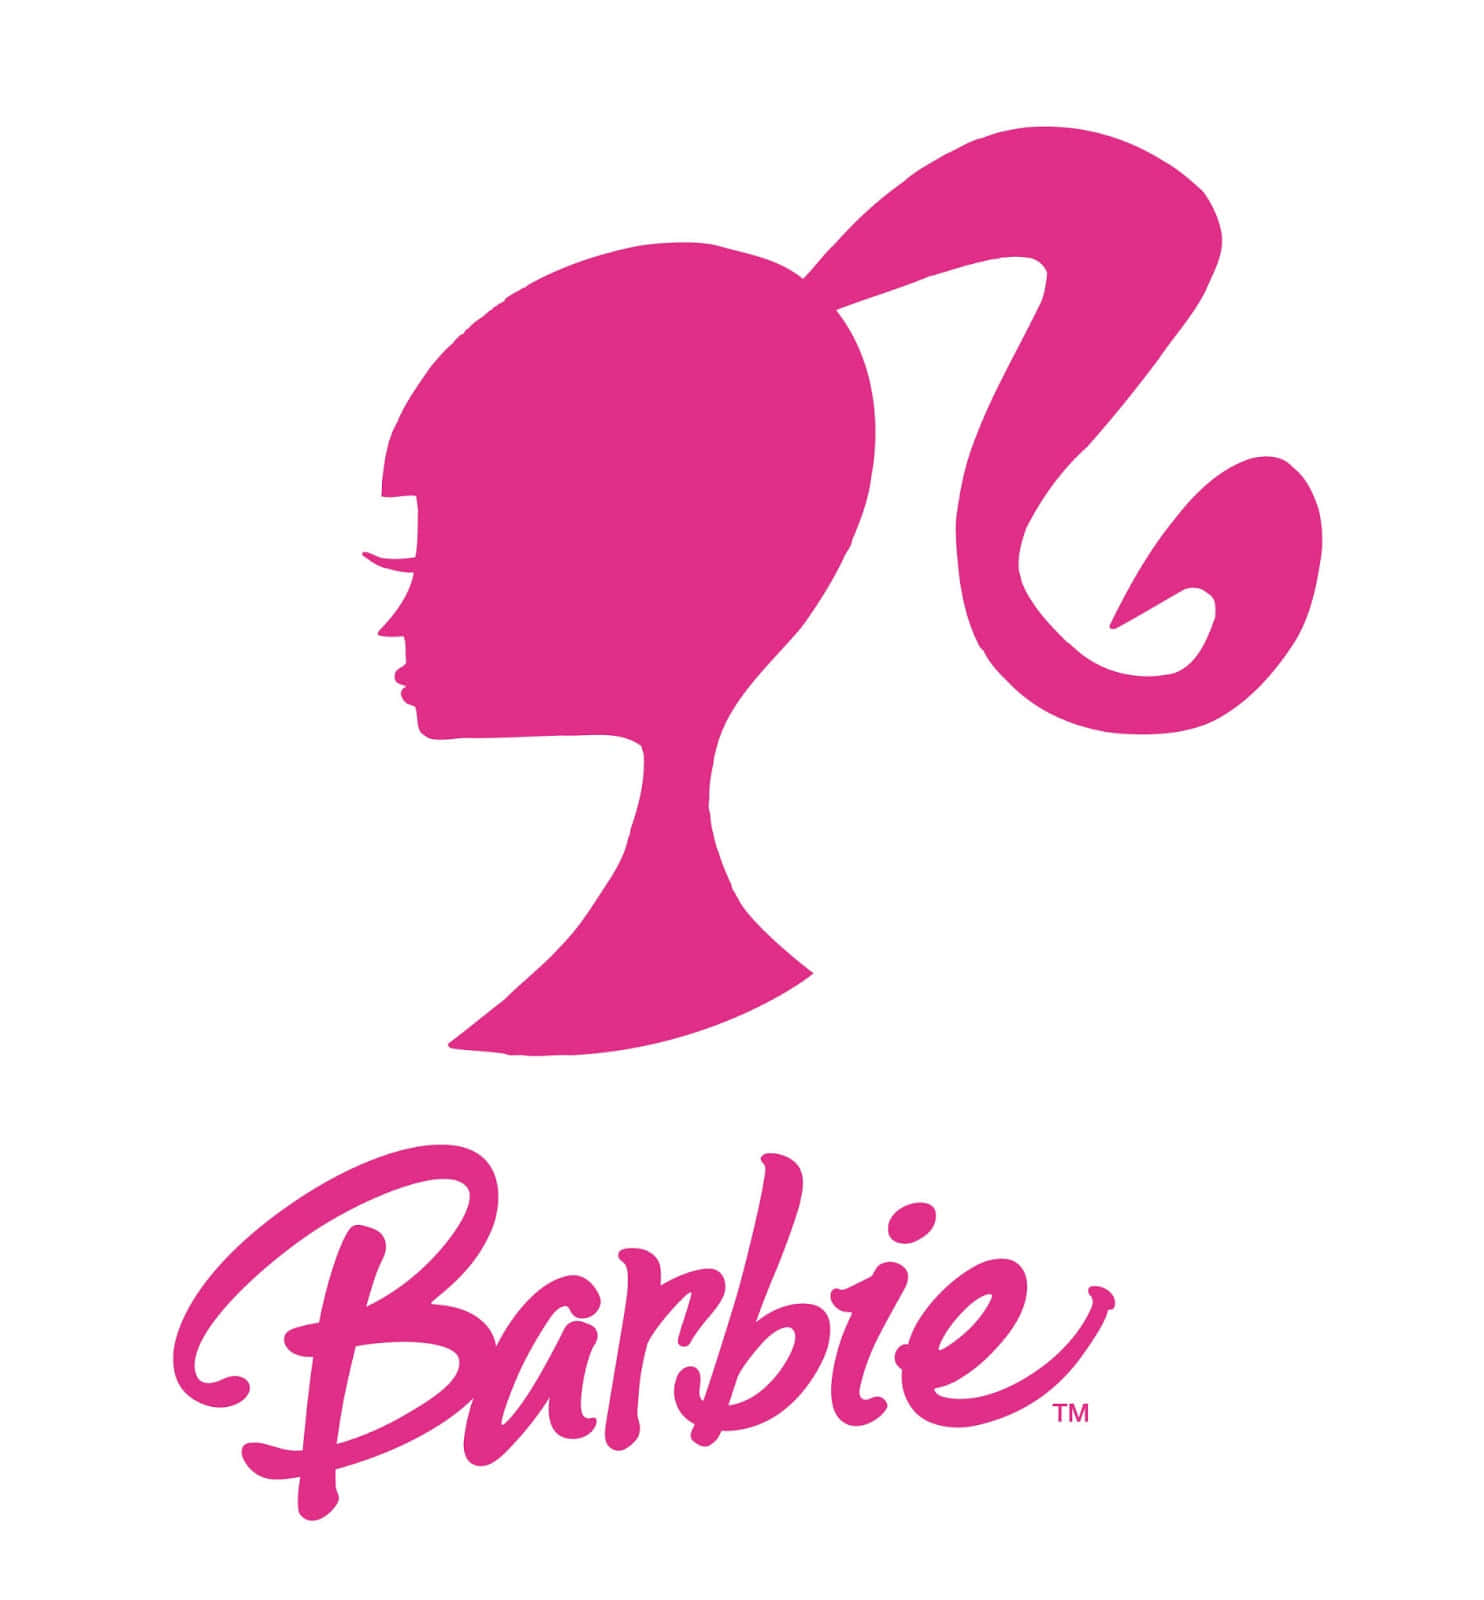 vintage barbie logo wallpaper